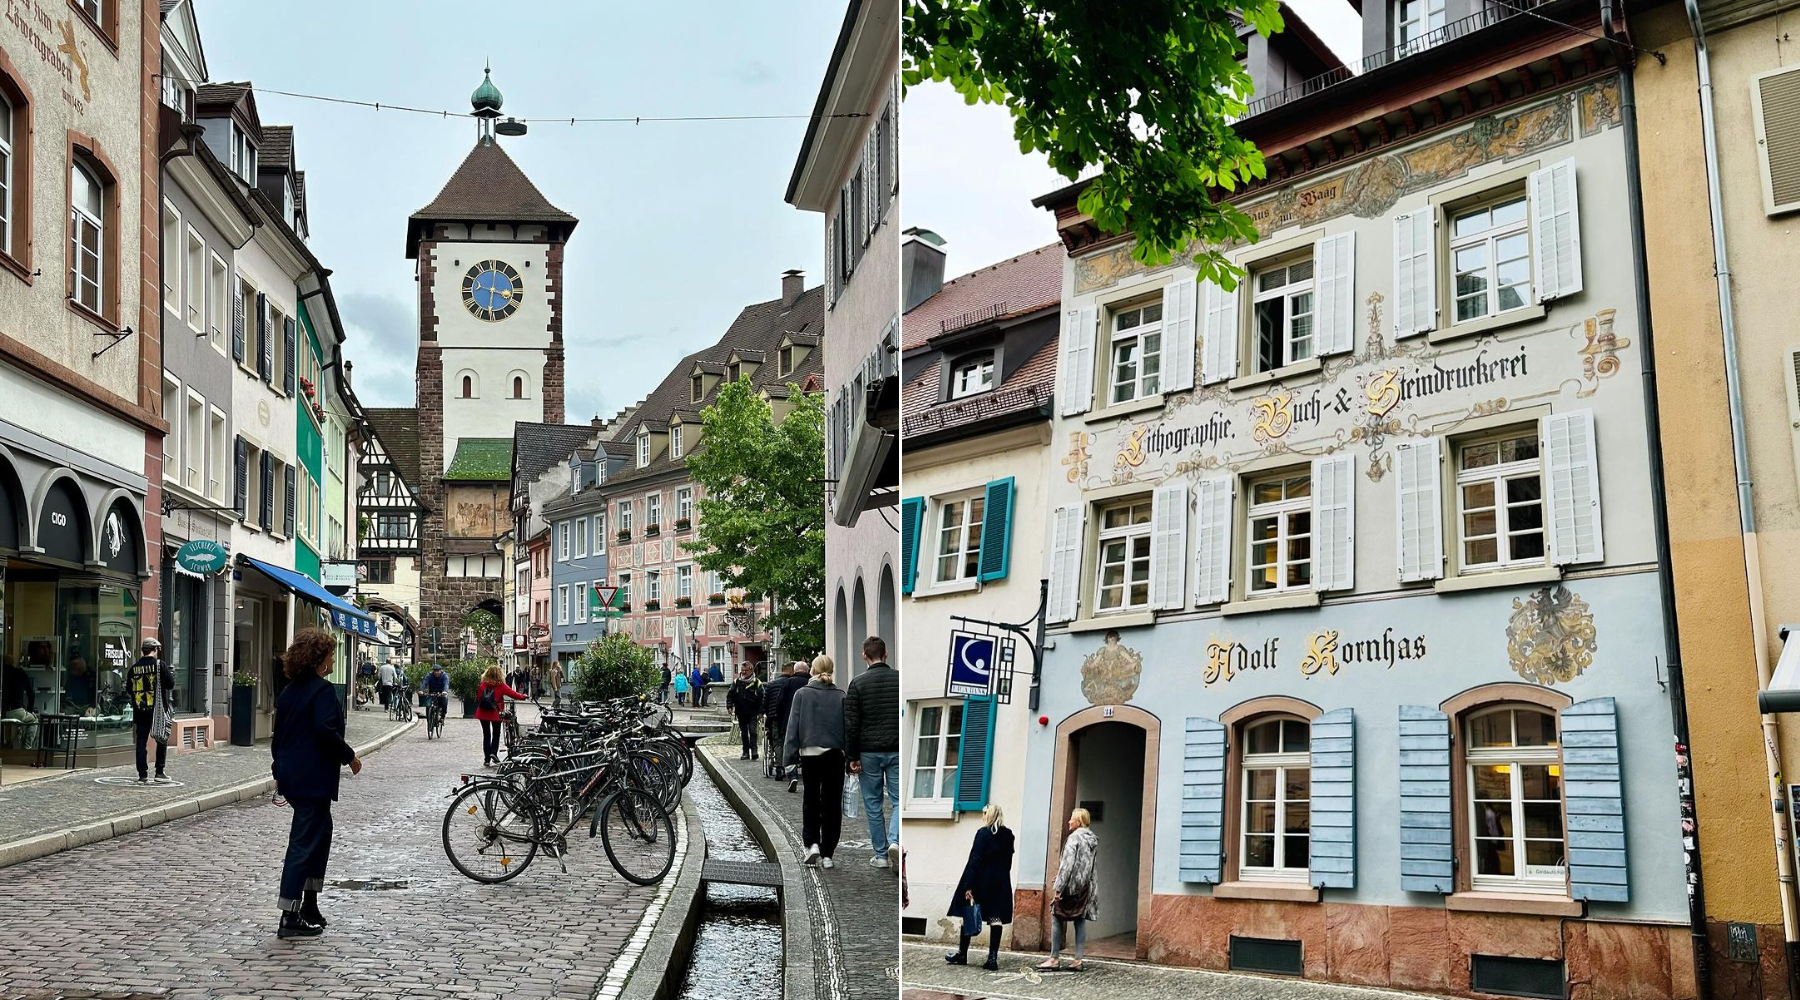 Freiburg je skriveni dragulj Nemačke – saznajte zašto se nalazi na vrhu naše travel liste